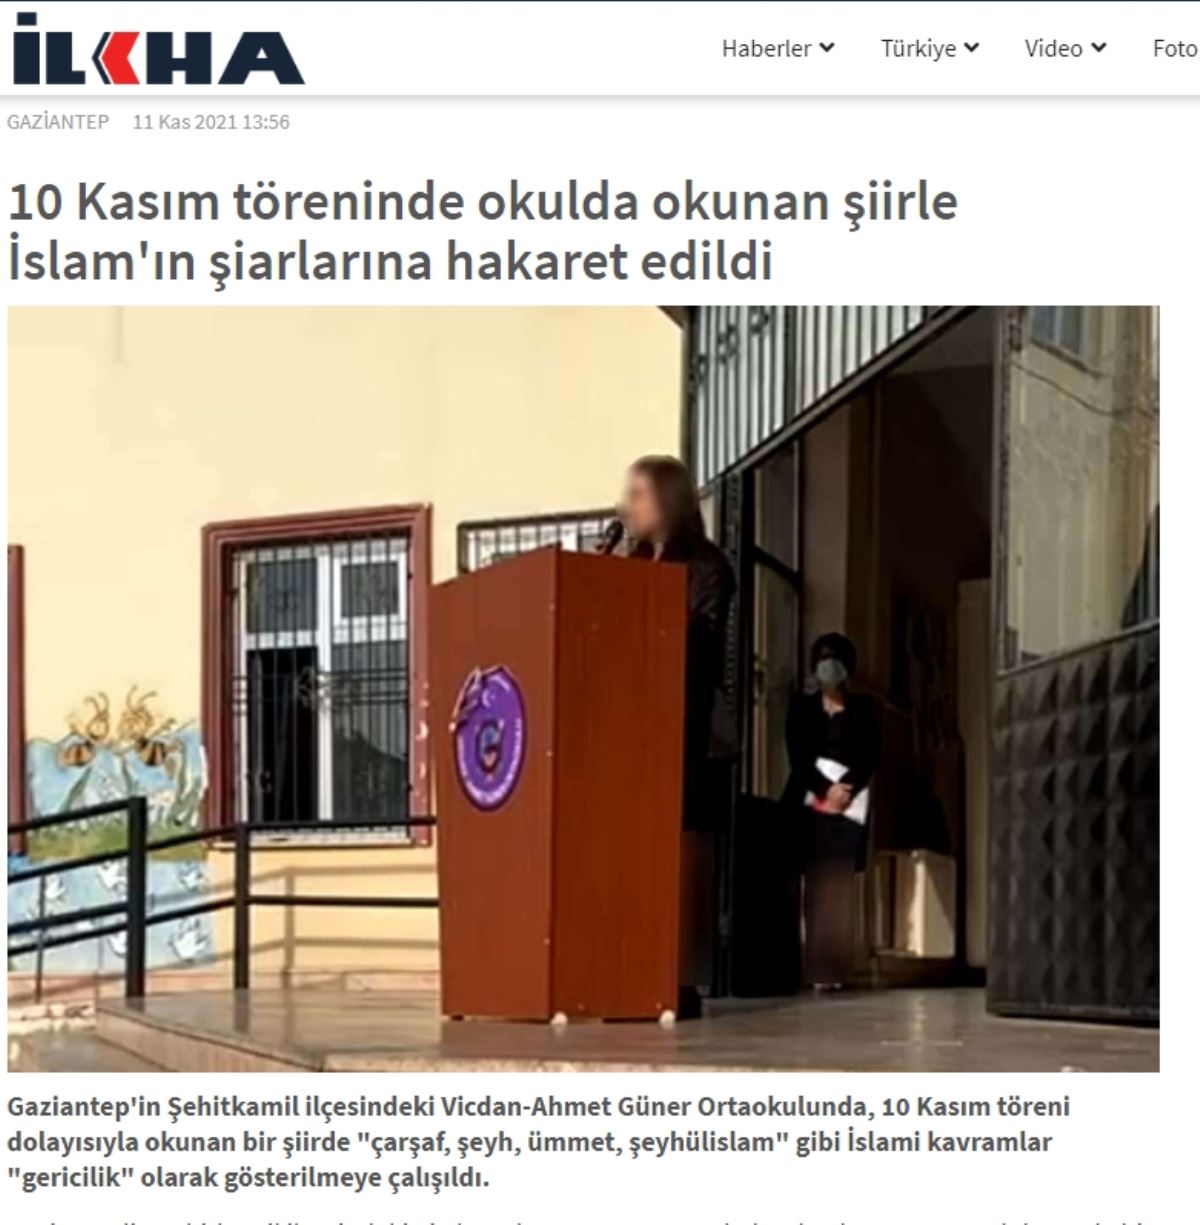 Gaziantep Valiliği, 10 Kasım merasiminde okunan şiir hakkında dini pahaları aşağıladığı gerekçesiyle soruşturma başlattı